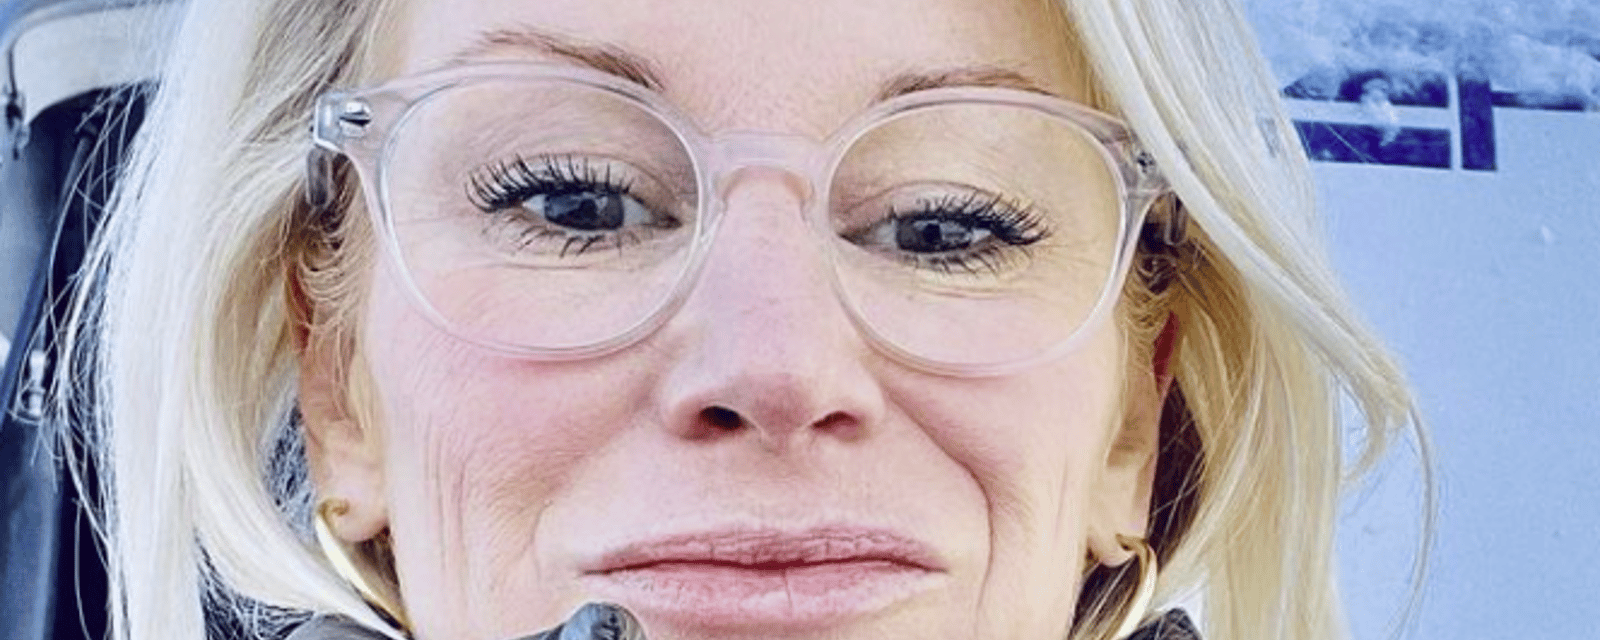 Cathy Gauthier dévoile son nouveau look « Marilyn Monroe » et provoque une tonne de réactions